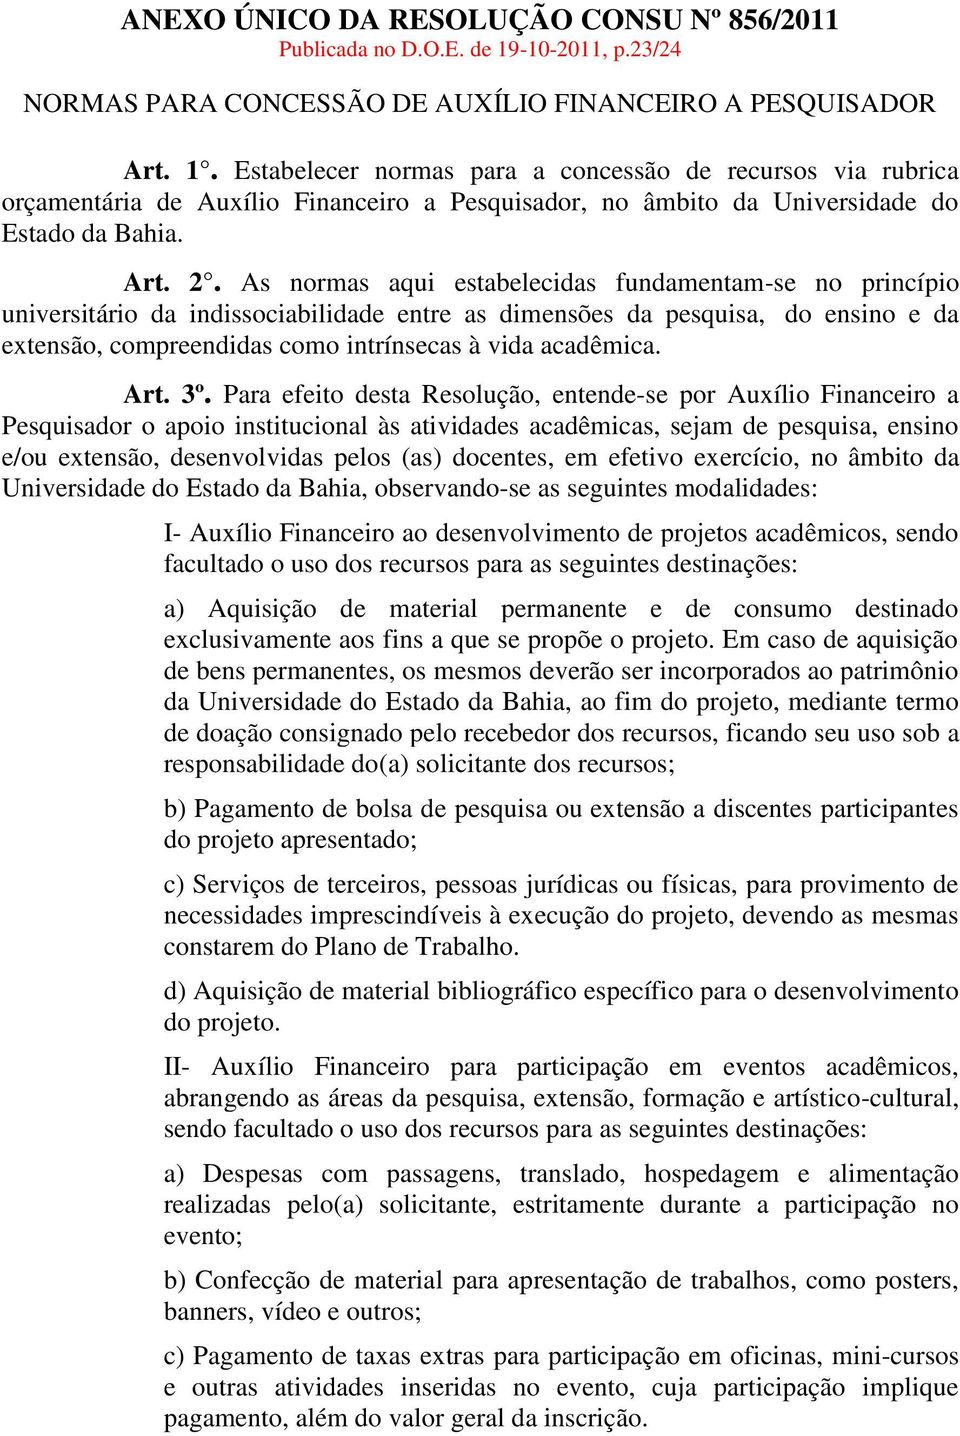 Estabelecer normas para a concessão de recursos via rubrica orçamentária de Auxílio Financeiro a Pesquisador, no âmbito da Universidade do Estado da Bahia. Art. 2.